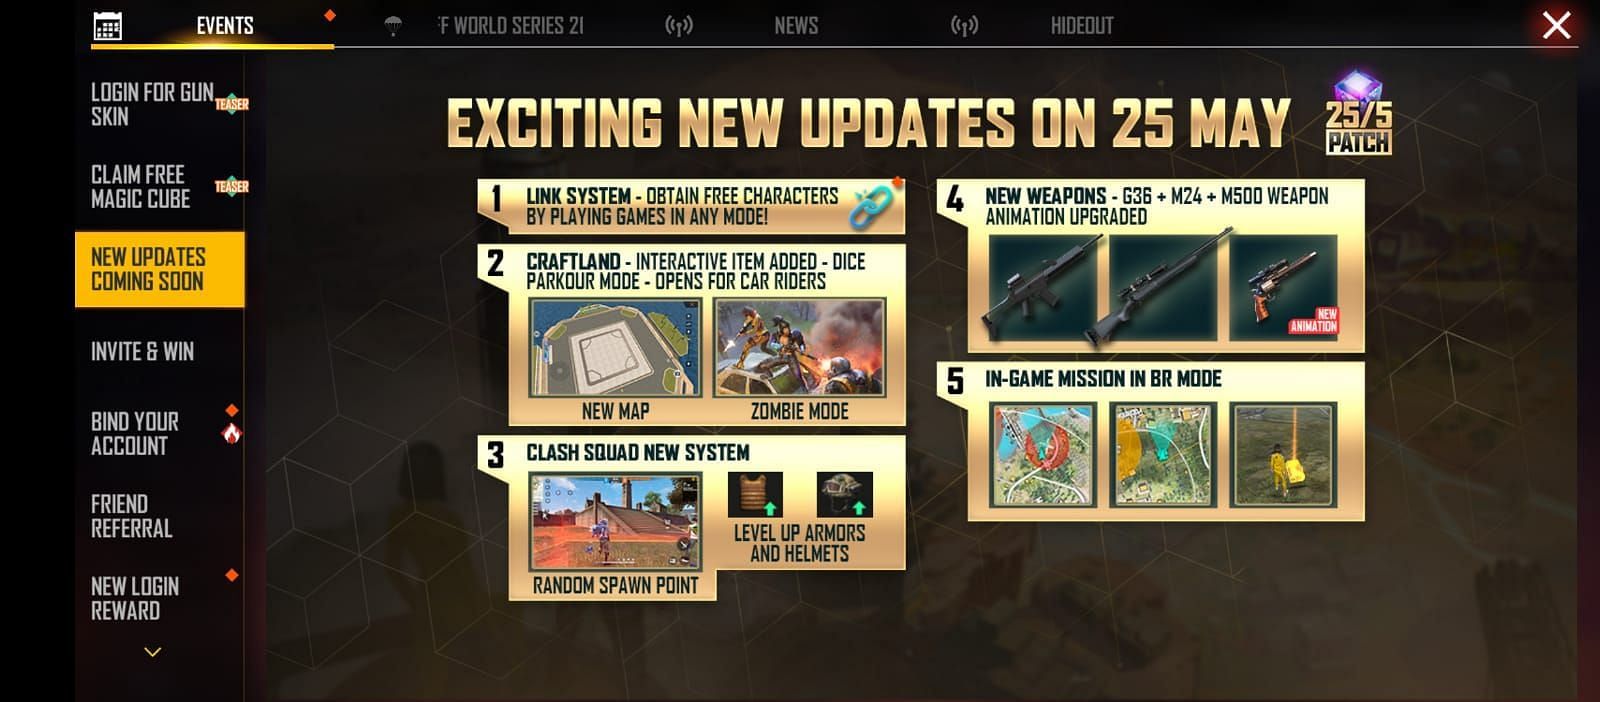 Aqui estão alguns dos recursos que os gamers mobile podem esperar na nova atualização (Imagem via Garena)